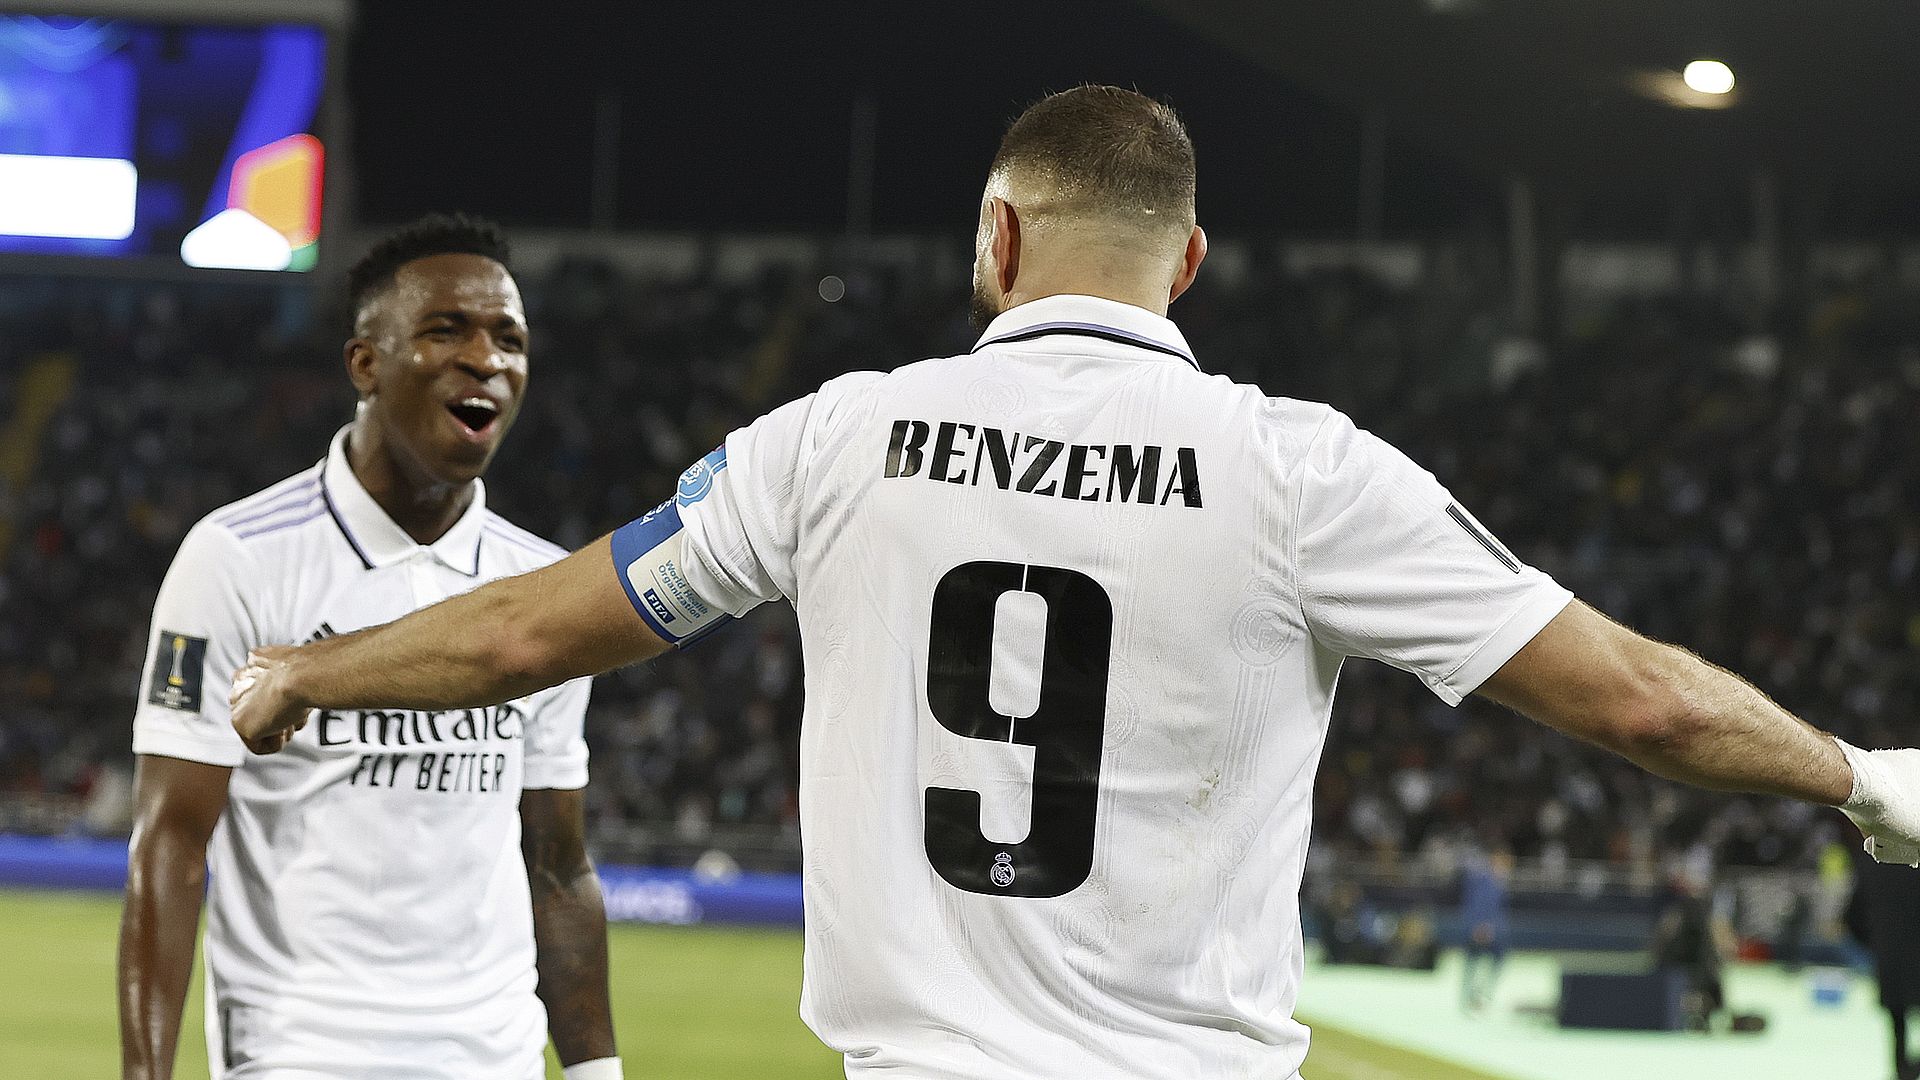 Real Madrid - Mercato : la presse a déjà attribué son numéro de